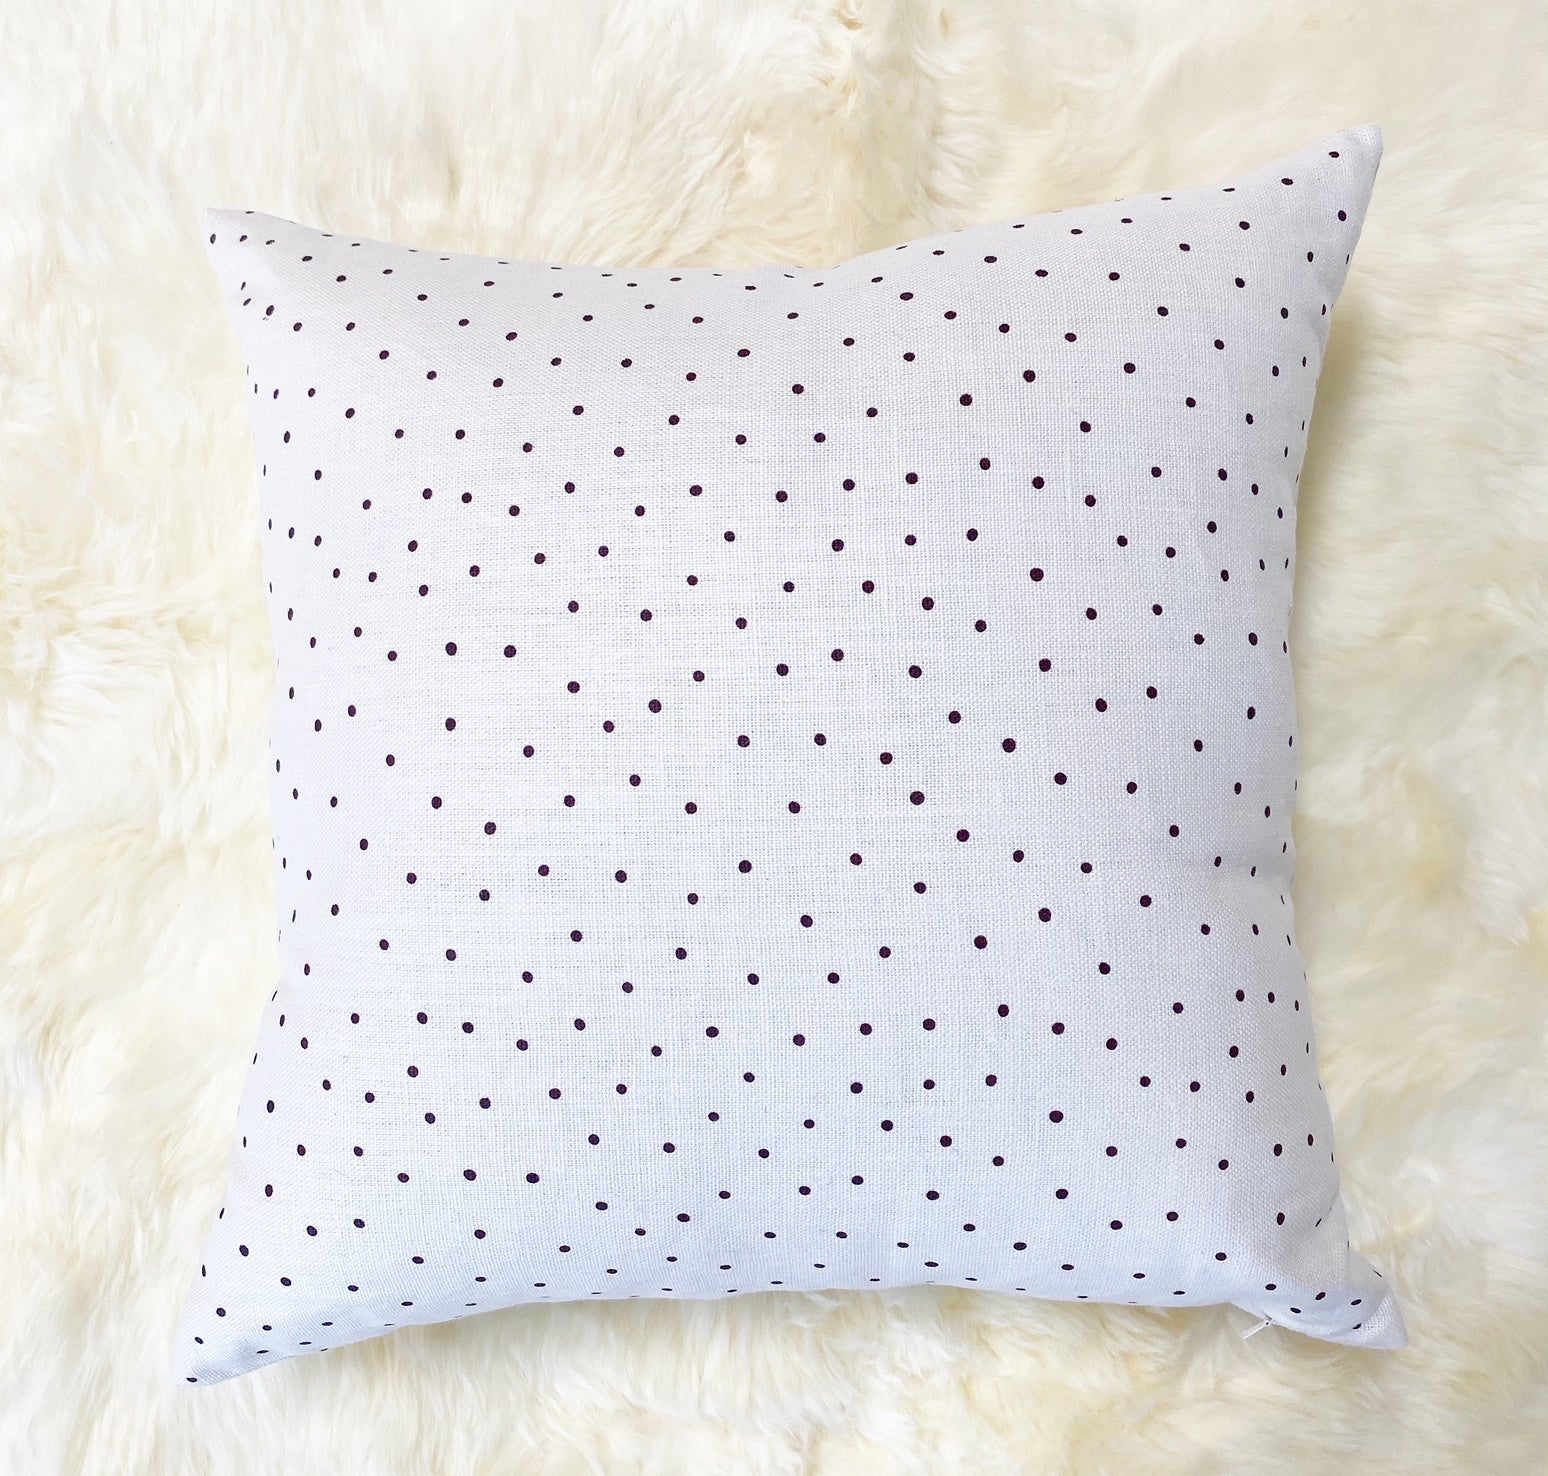 Rose Uniacke Burgundy Dots Linen Pillow, 20"